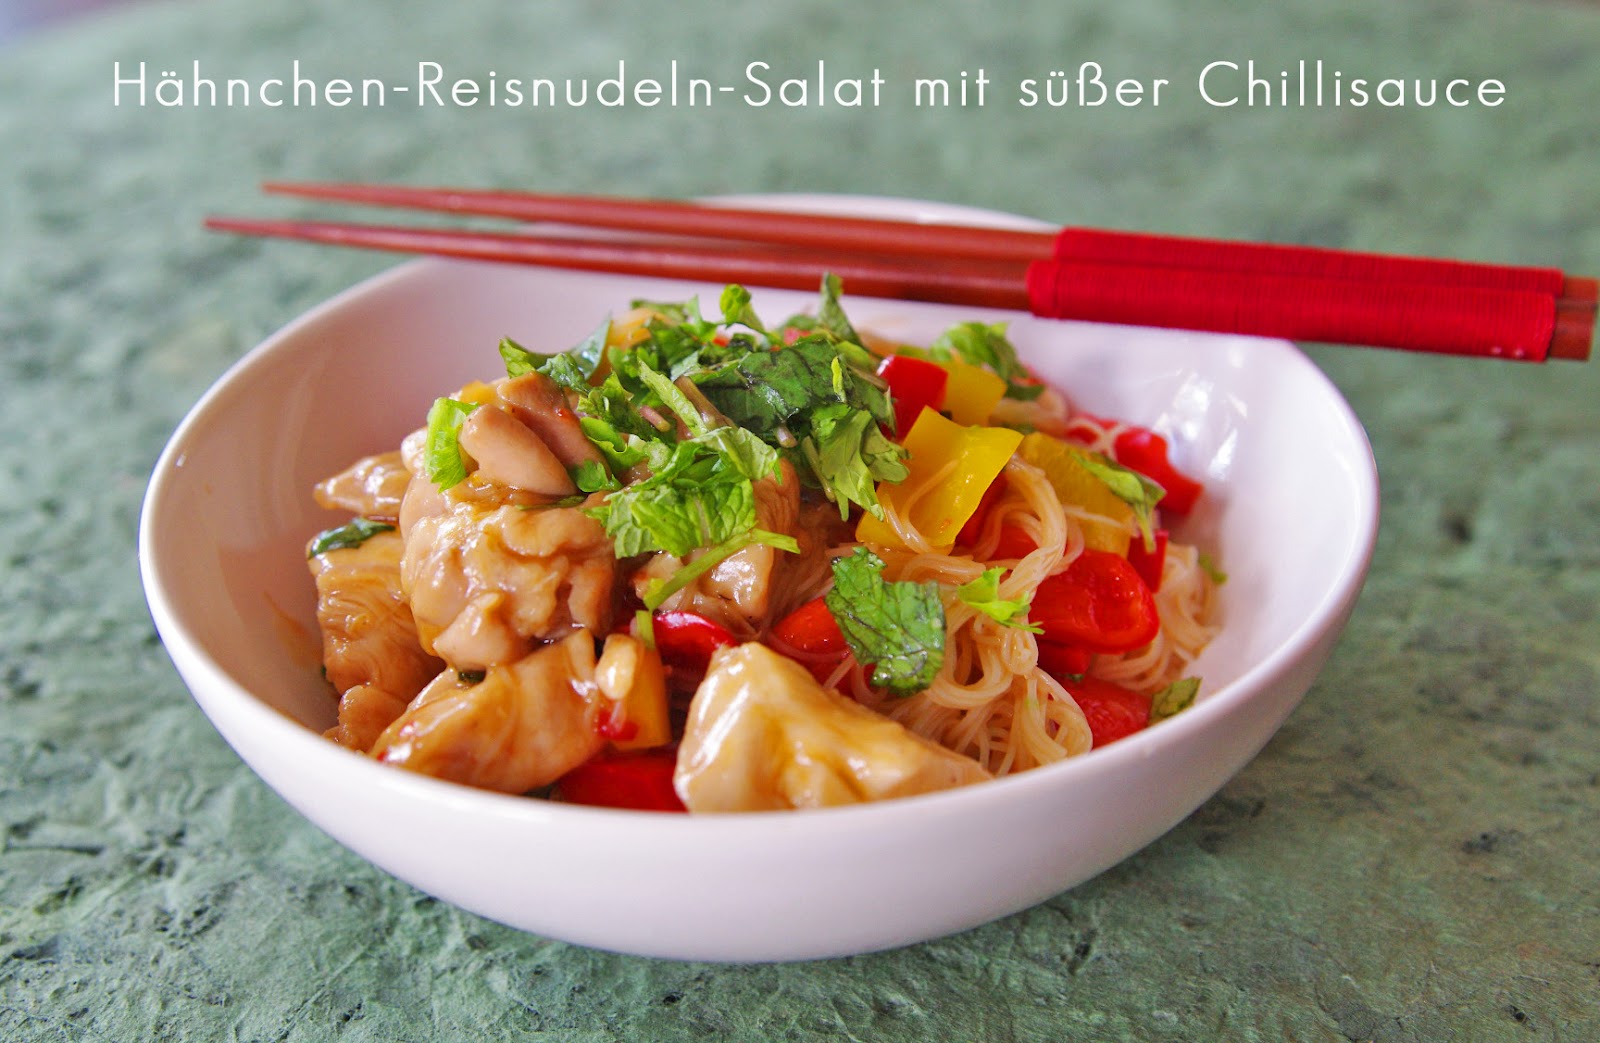 We Love to Cook: Reisnudel-Salat mit Hähnchen und süßer Chilisauce